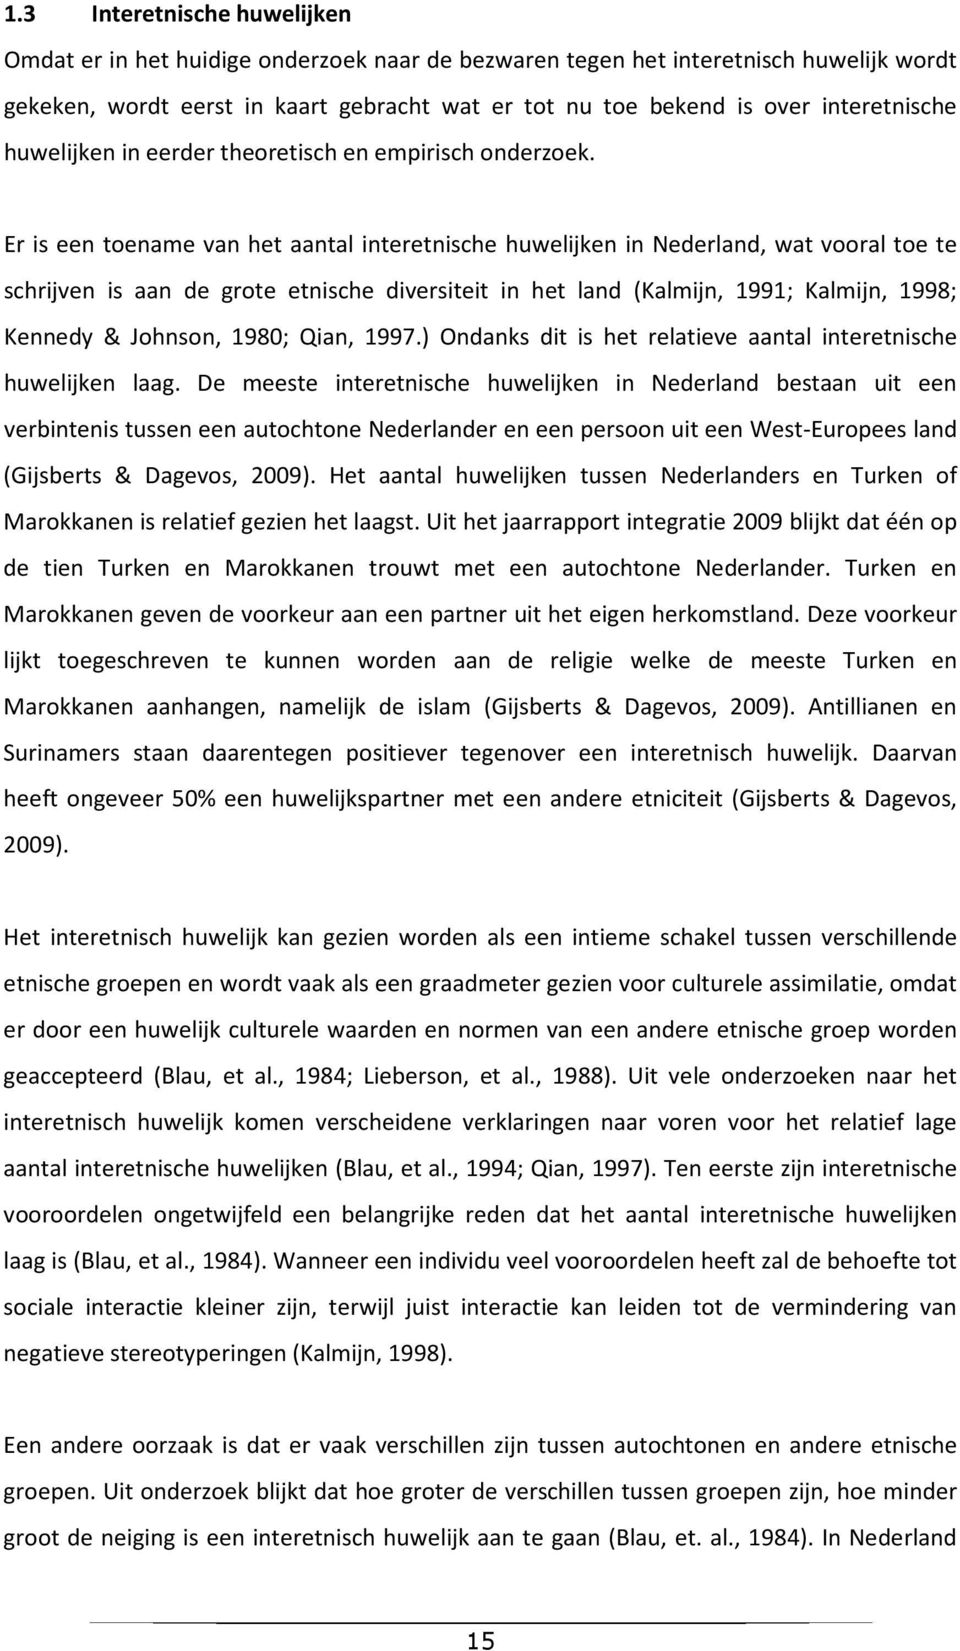 Er is een toename van het aantal interetnische huwelijken in Nederland, wat vooral toe te schrijven is aan de grote etnische diversiteit in het land (Kalmijn, 1991; Kalmijn, 1998; Kennedy & Johnson,